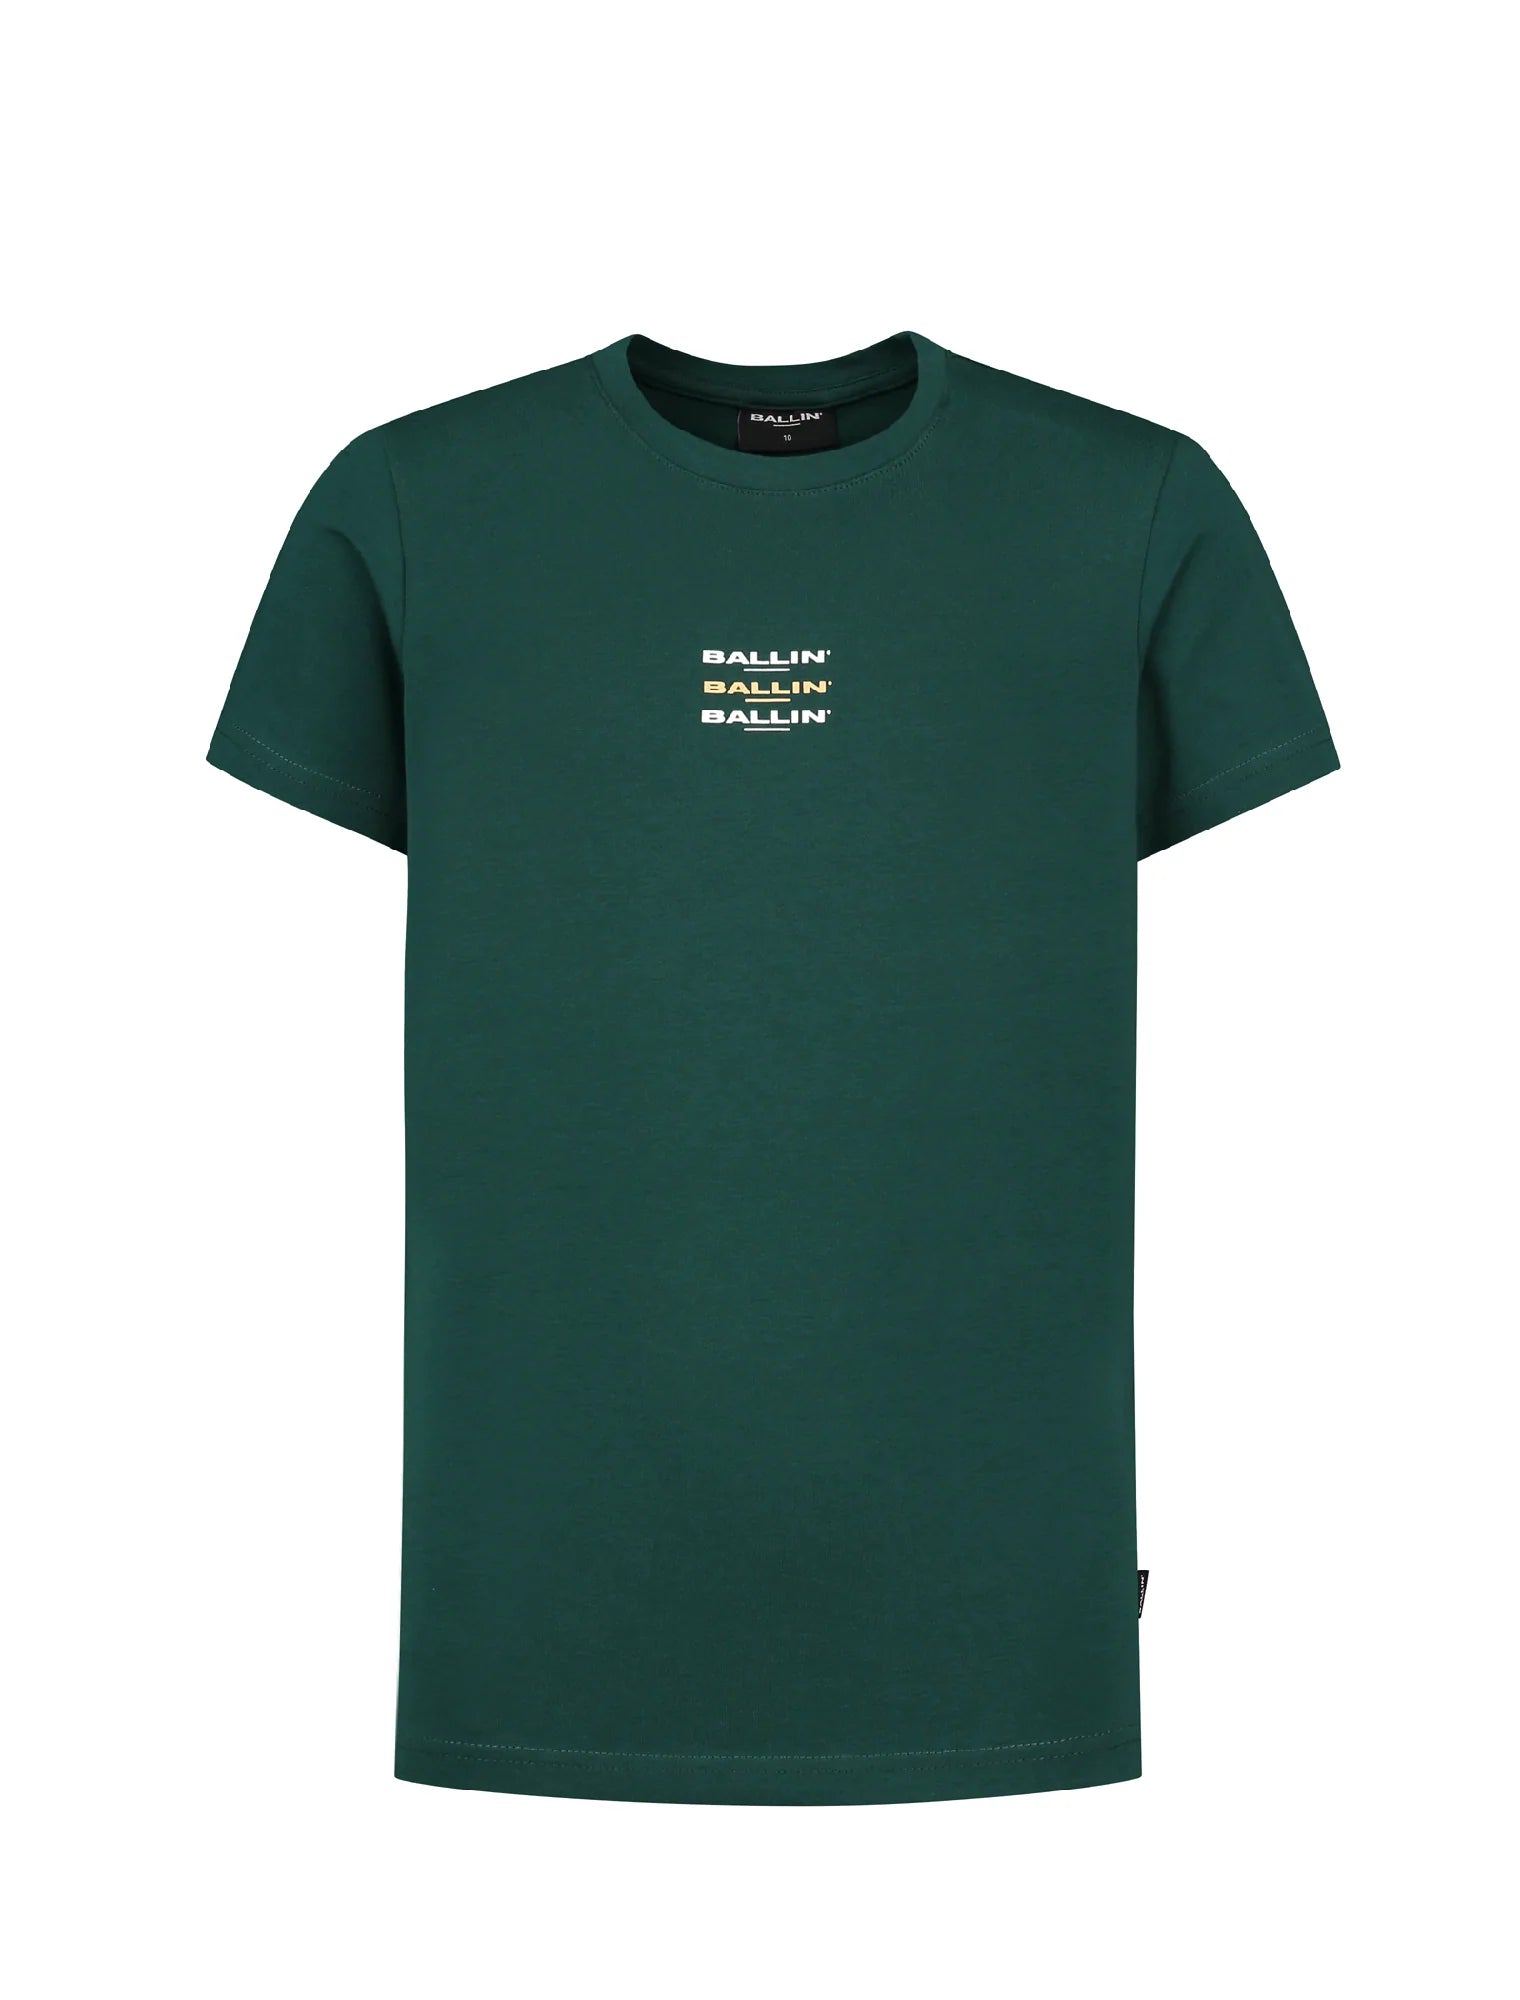 Unisexs T-shirt van Ballin Amsterdam in de kleur Green in maat 176.